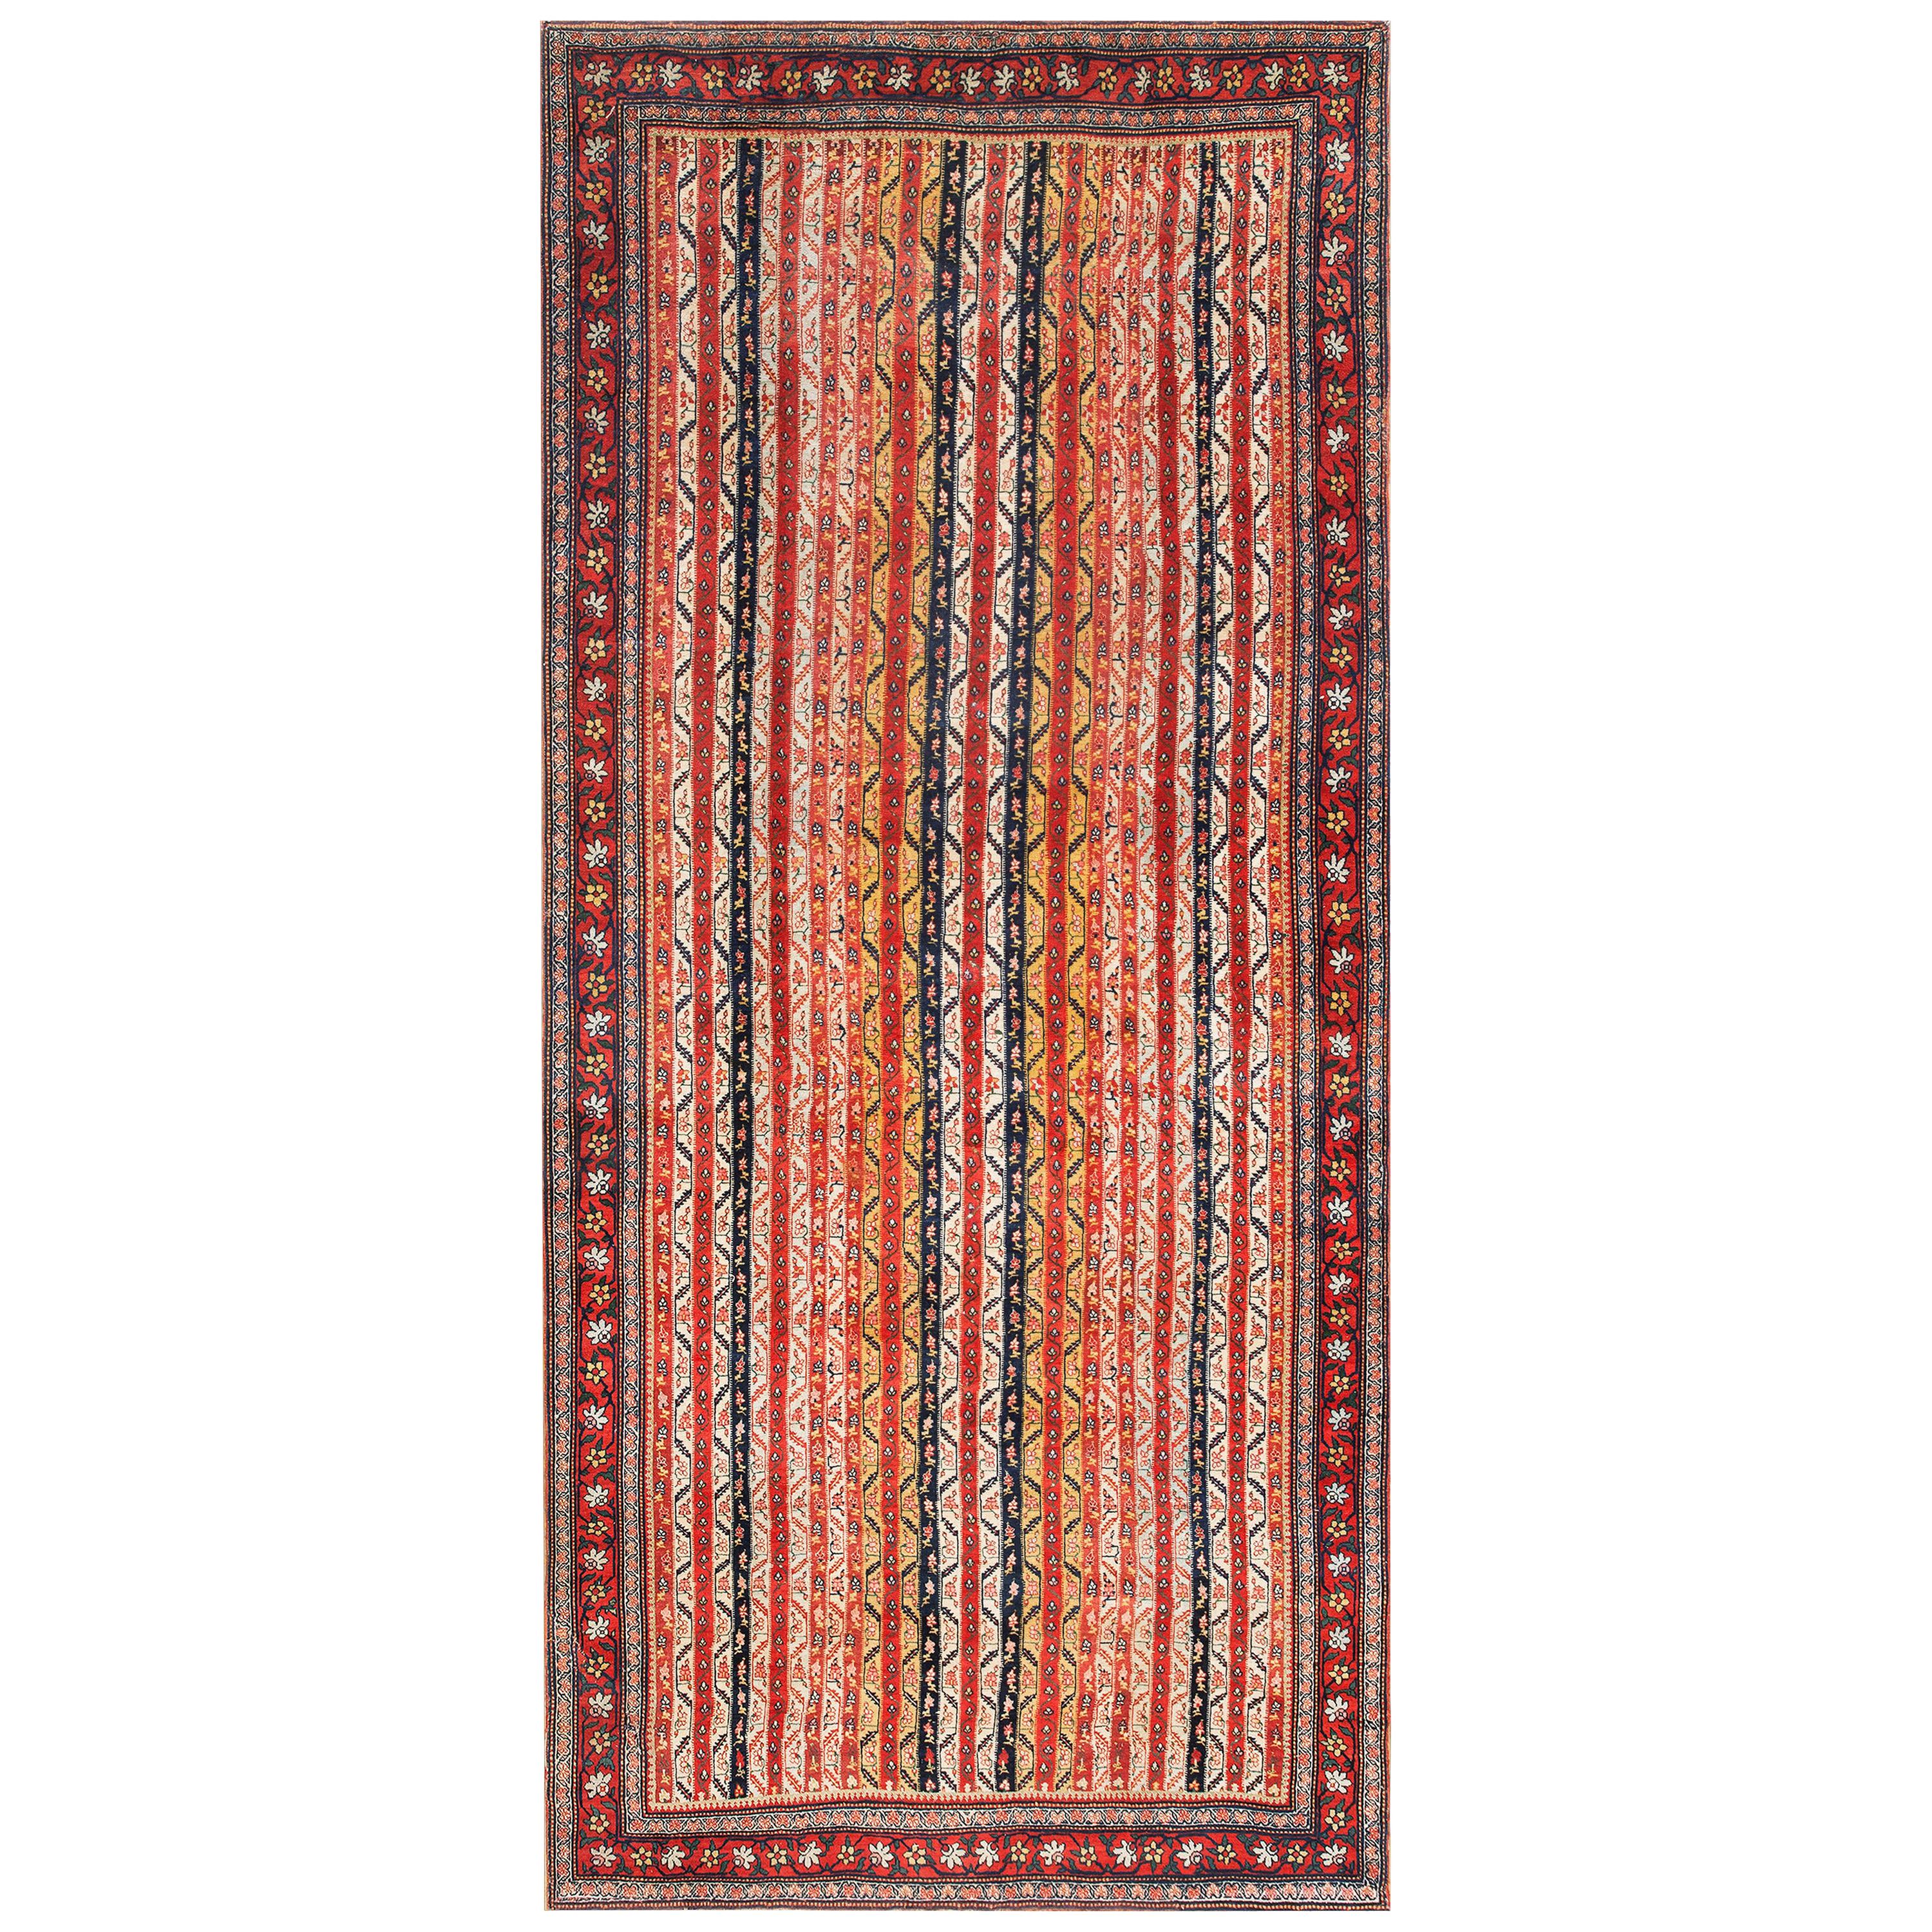 19th Century W. Persian Bijar Carpet ( 5'10" x 13' - 178 x 396 )